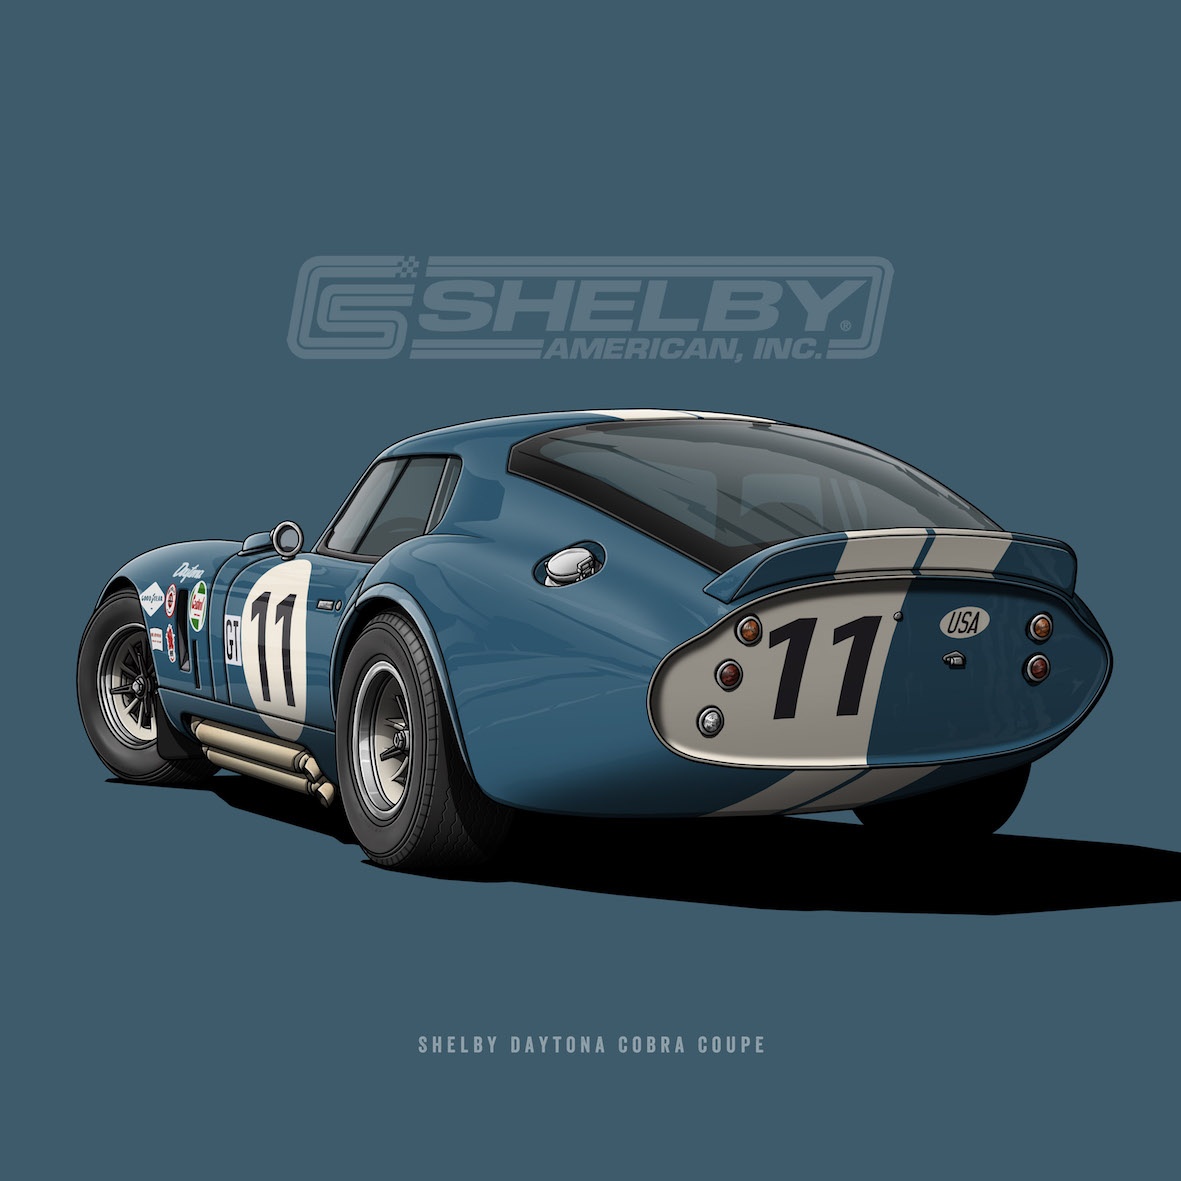 Shelby Daytona Cobra Coupe By Helge Jepsen